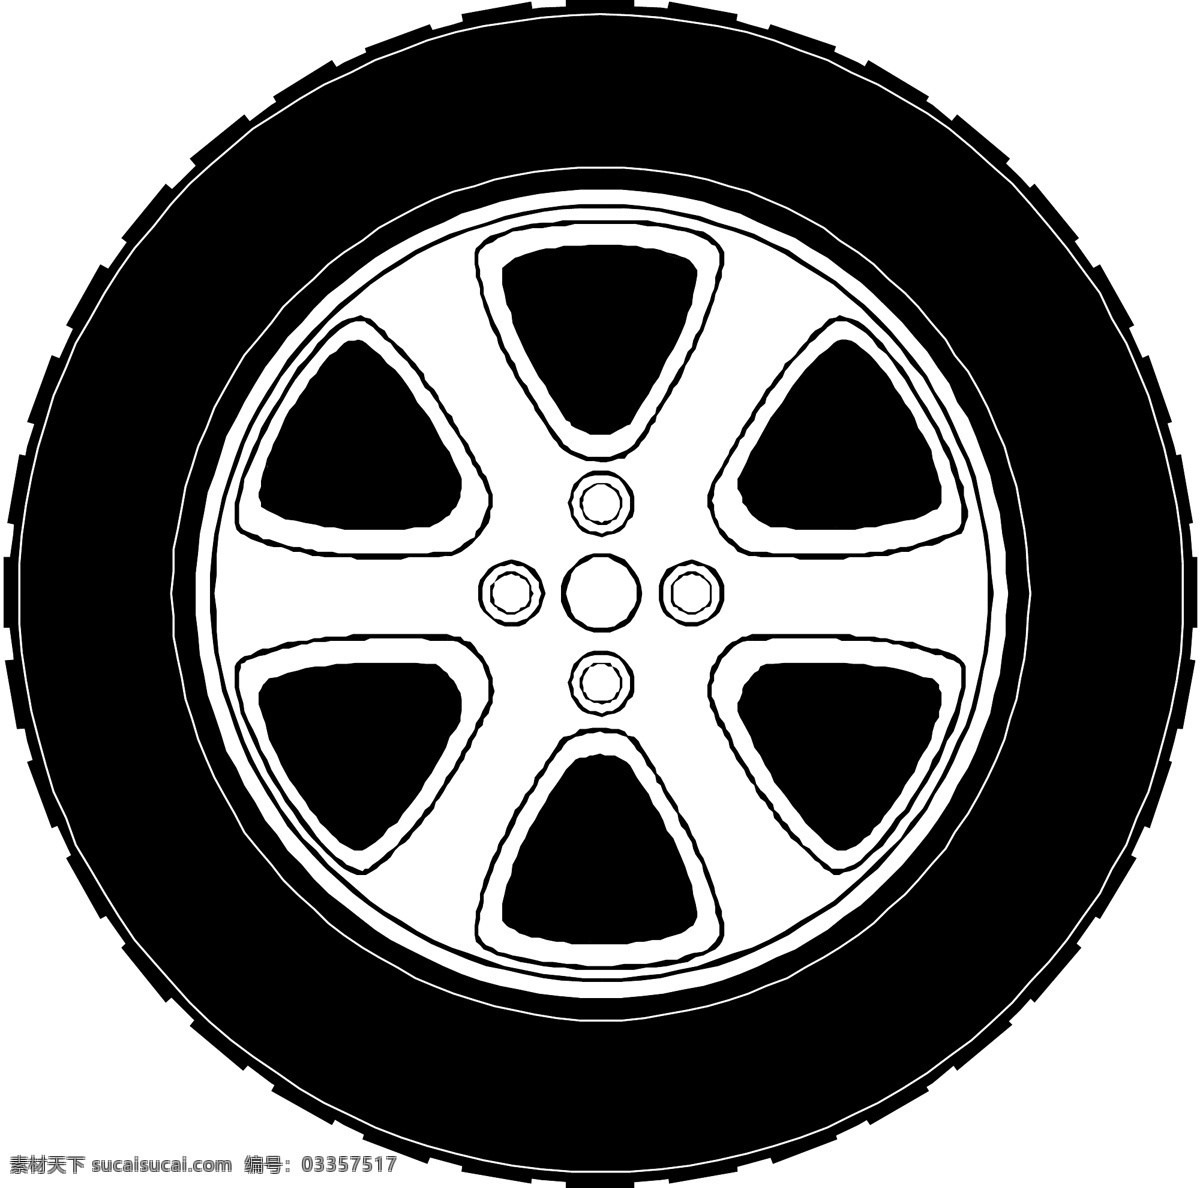 汽车轮胎 车轮 其他矢量 矢量素材 矢量图库 矢量 模板下载 其他矢量图